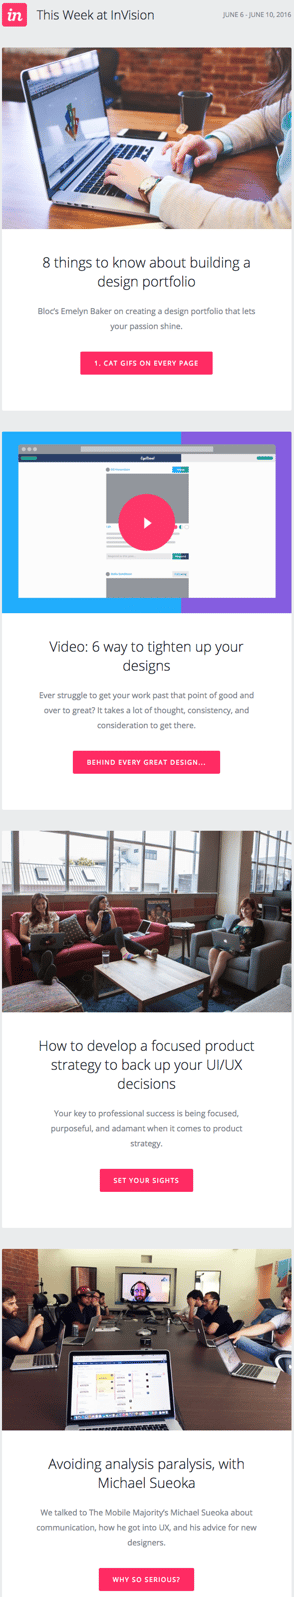 newsletter esempio di design con post sul blog di InVision